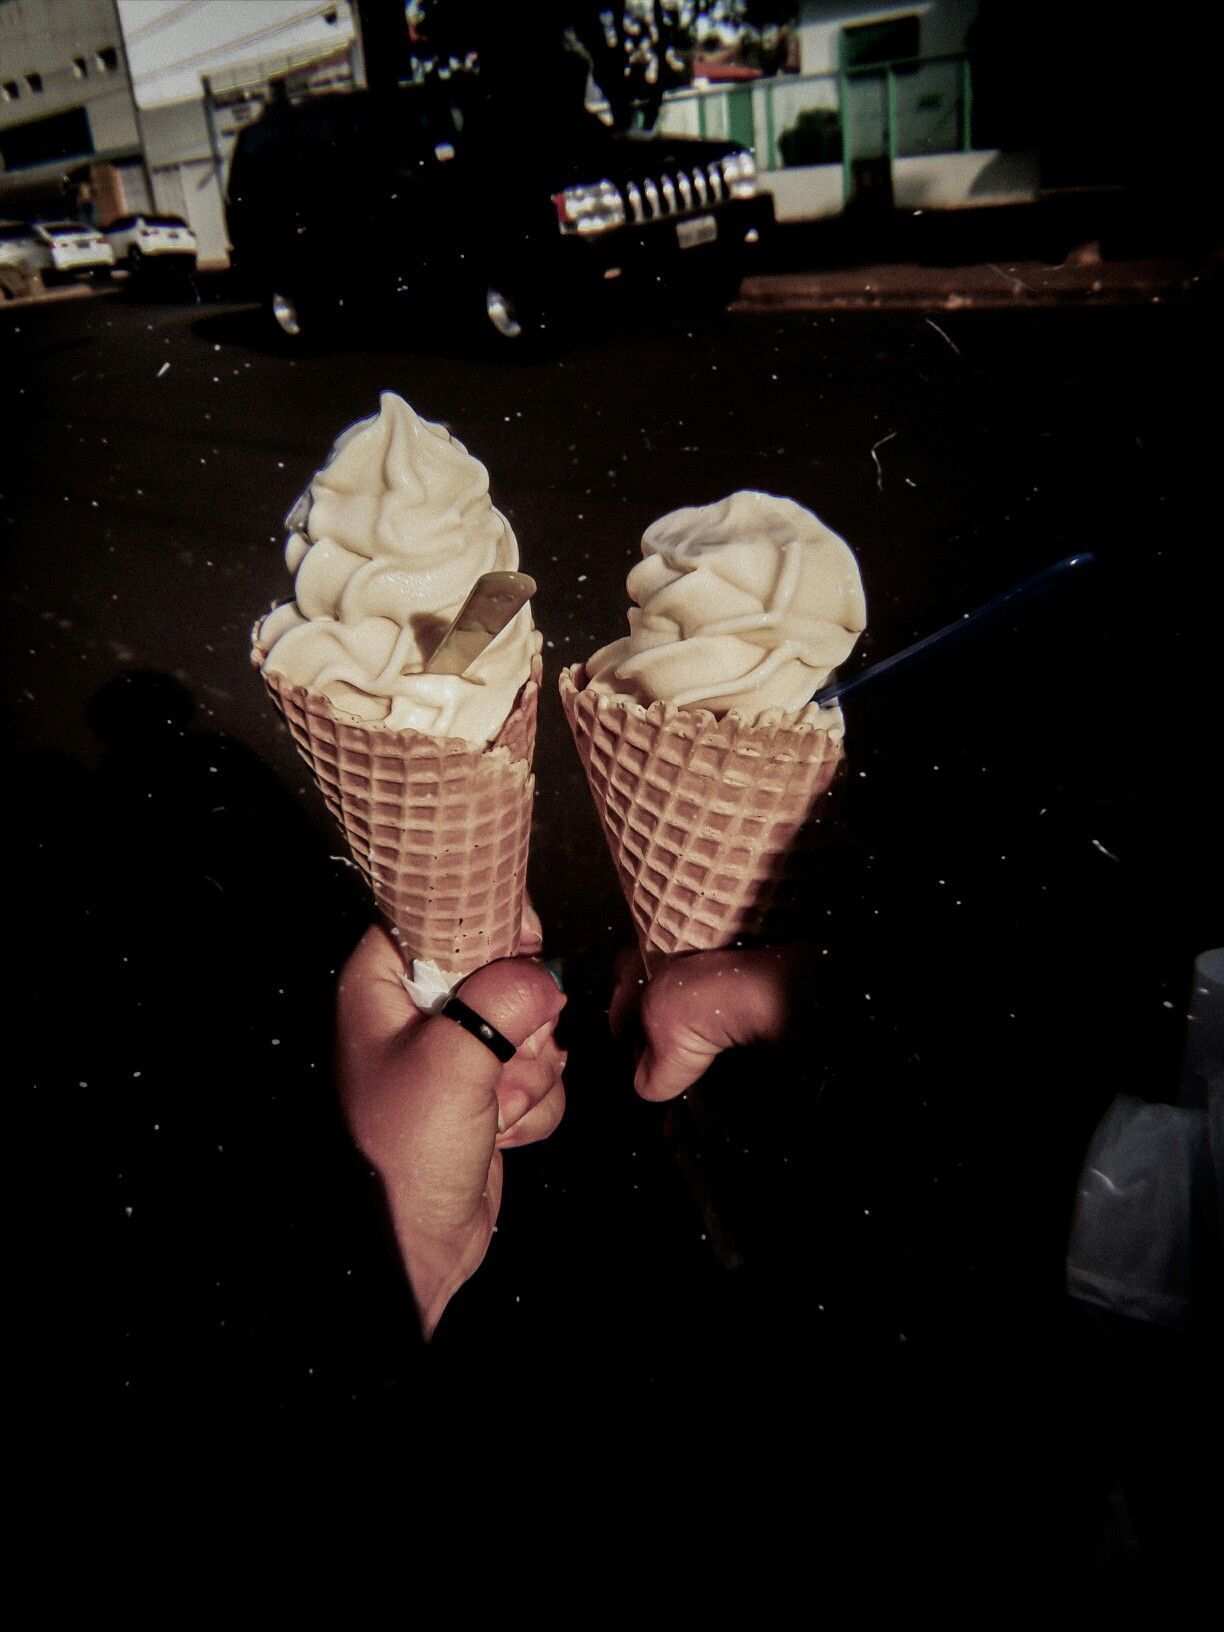 Ice cream aesthetics. Ice cream tumblr, Cream aesthetic, Ice cream